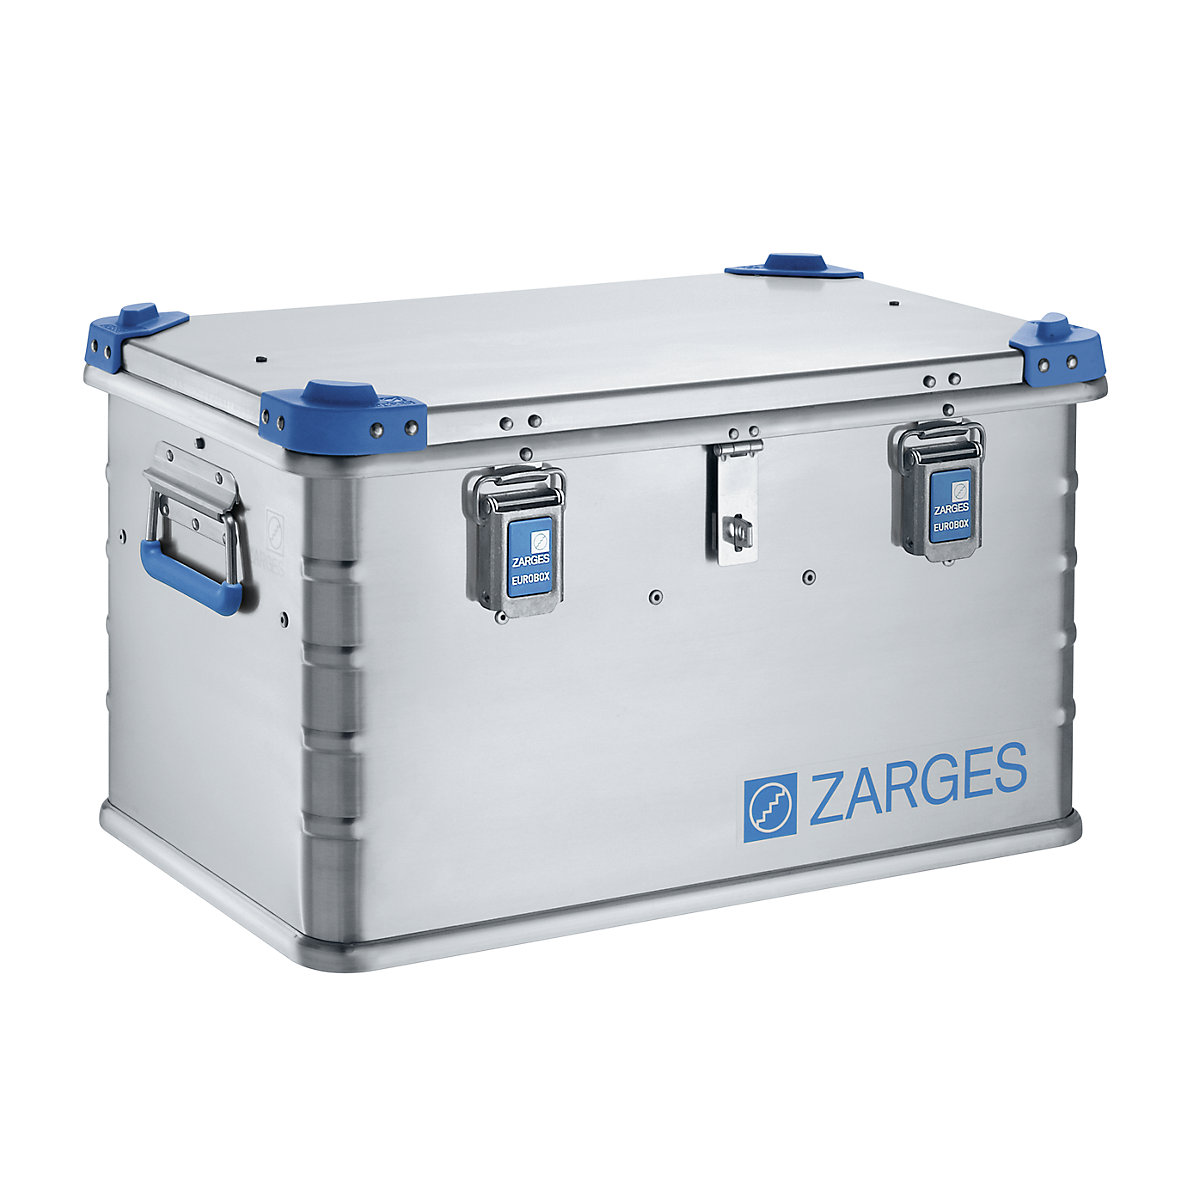 Euro-gereedschapsbox van aluminium - ZARGES